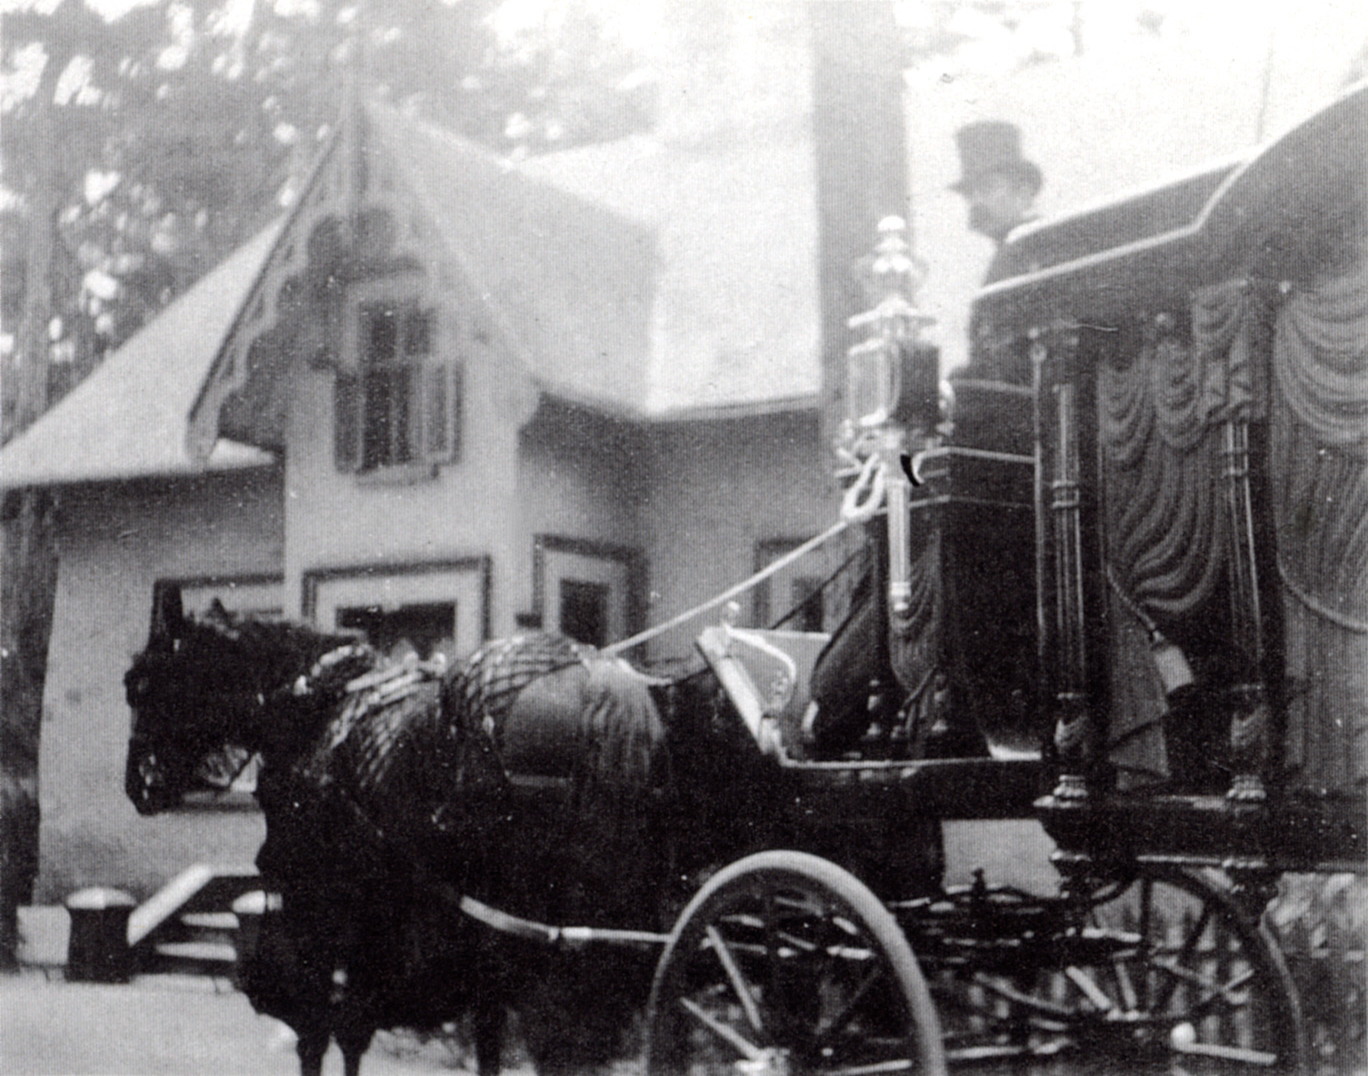 photo en noir et blanc d'un cortège funèbre, avec un corbillard à cheval entraîné et un homme portant un chapeau haut